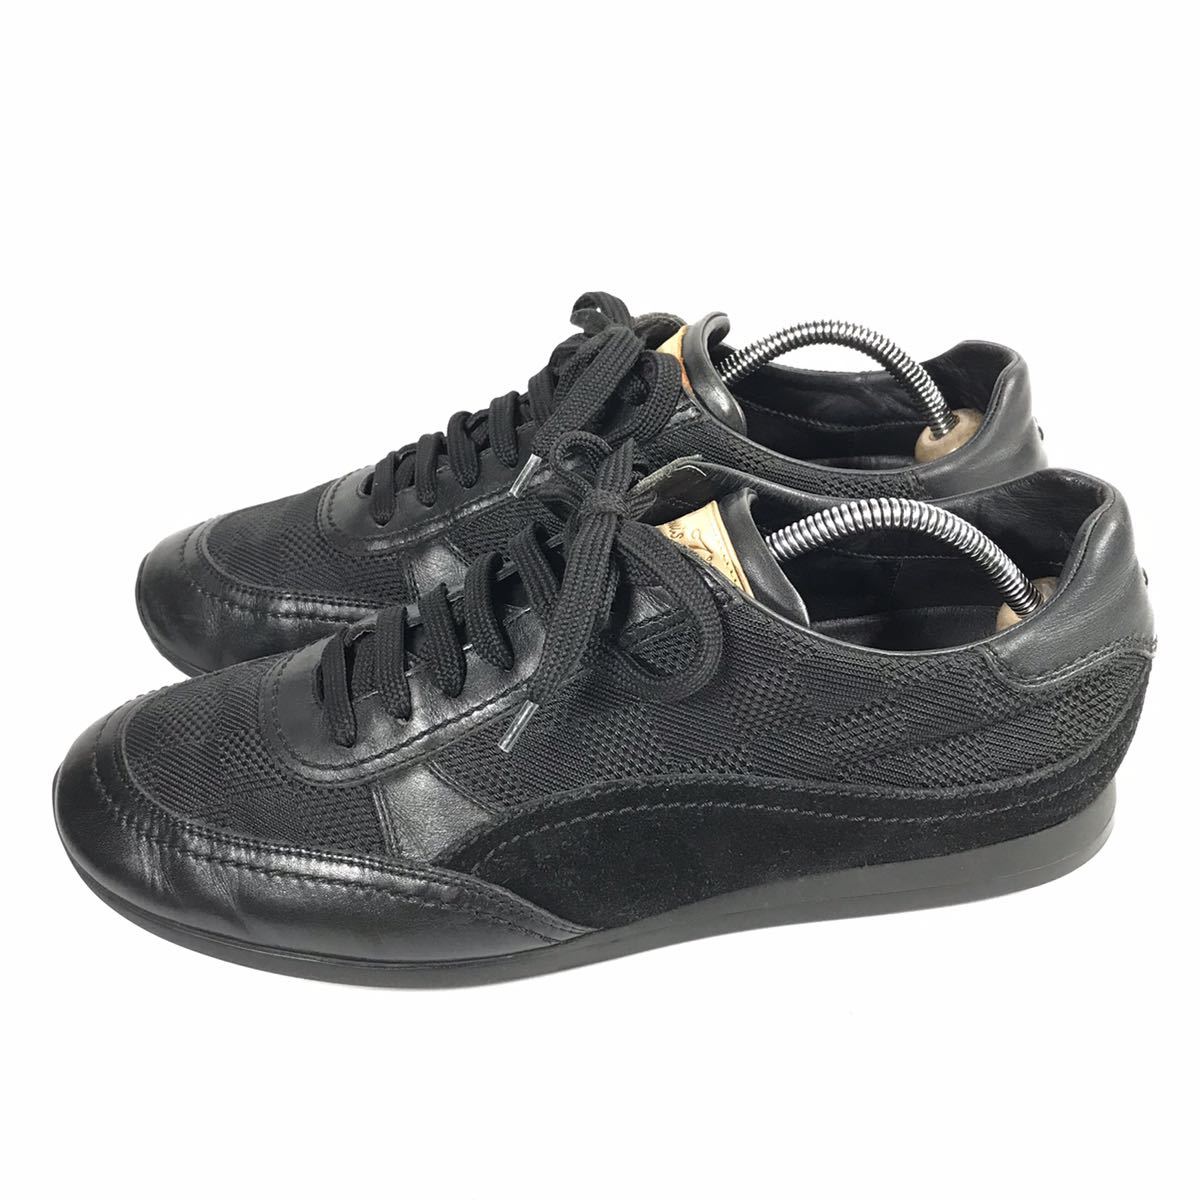 【ルイヴィトン】本物 LOUIS VUITTON 靴 26.5cm 黒 ダミエ スニーカー カジュアルシューズ レザー×スエード×メッシュ 紳士  メンズ 伊製 8